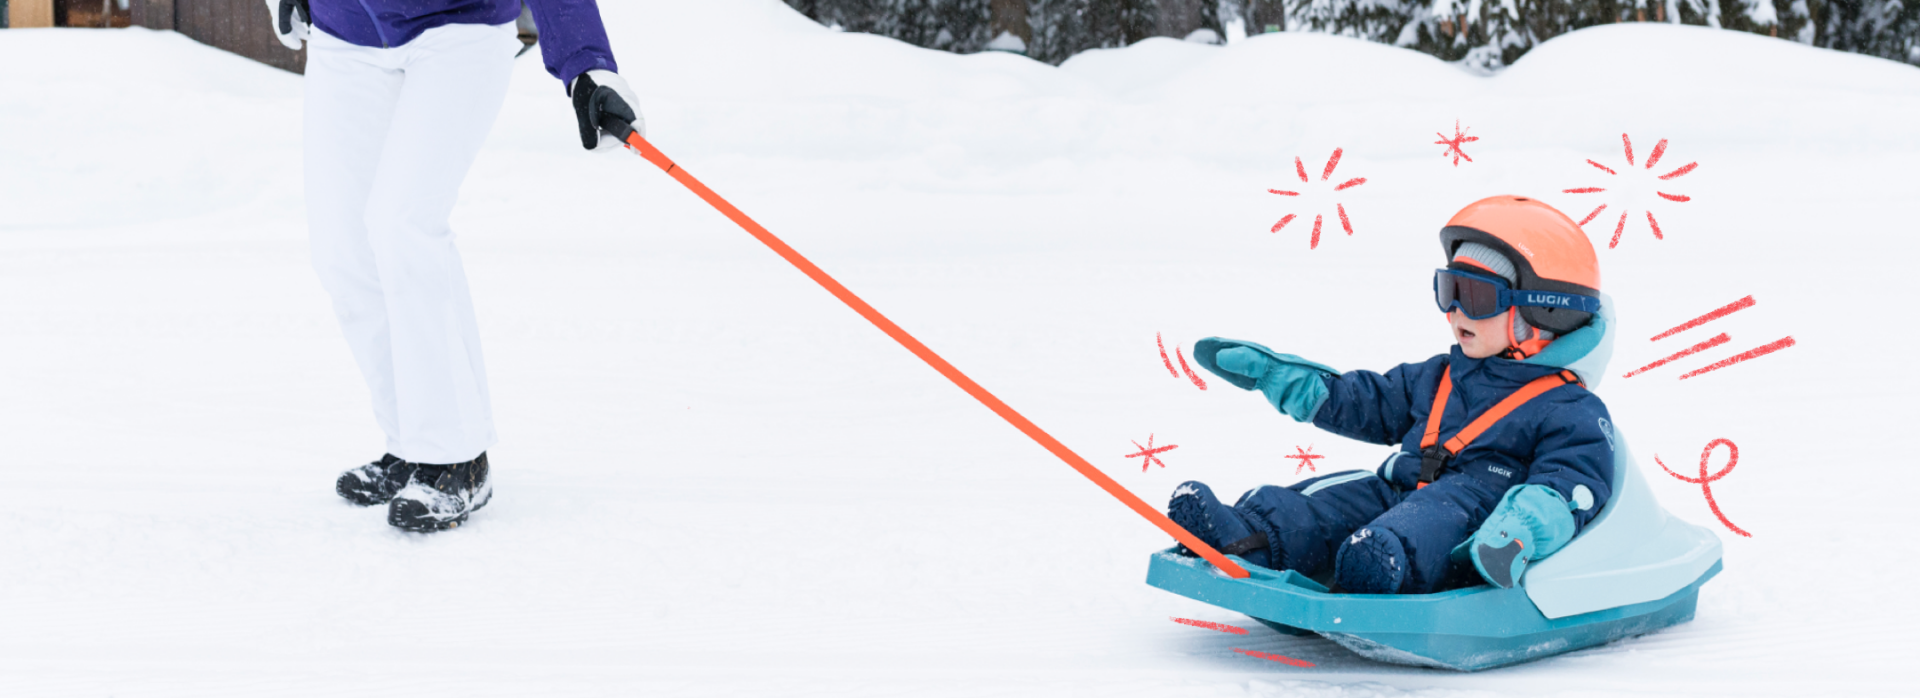 Snow activities for children